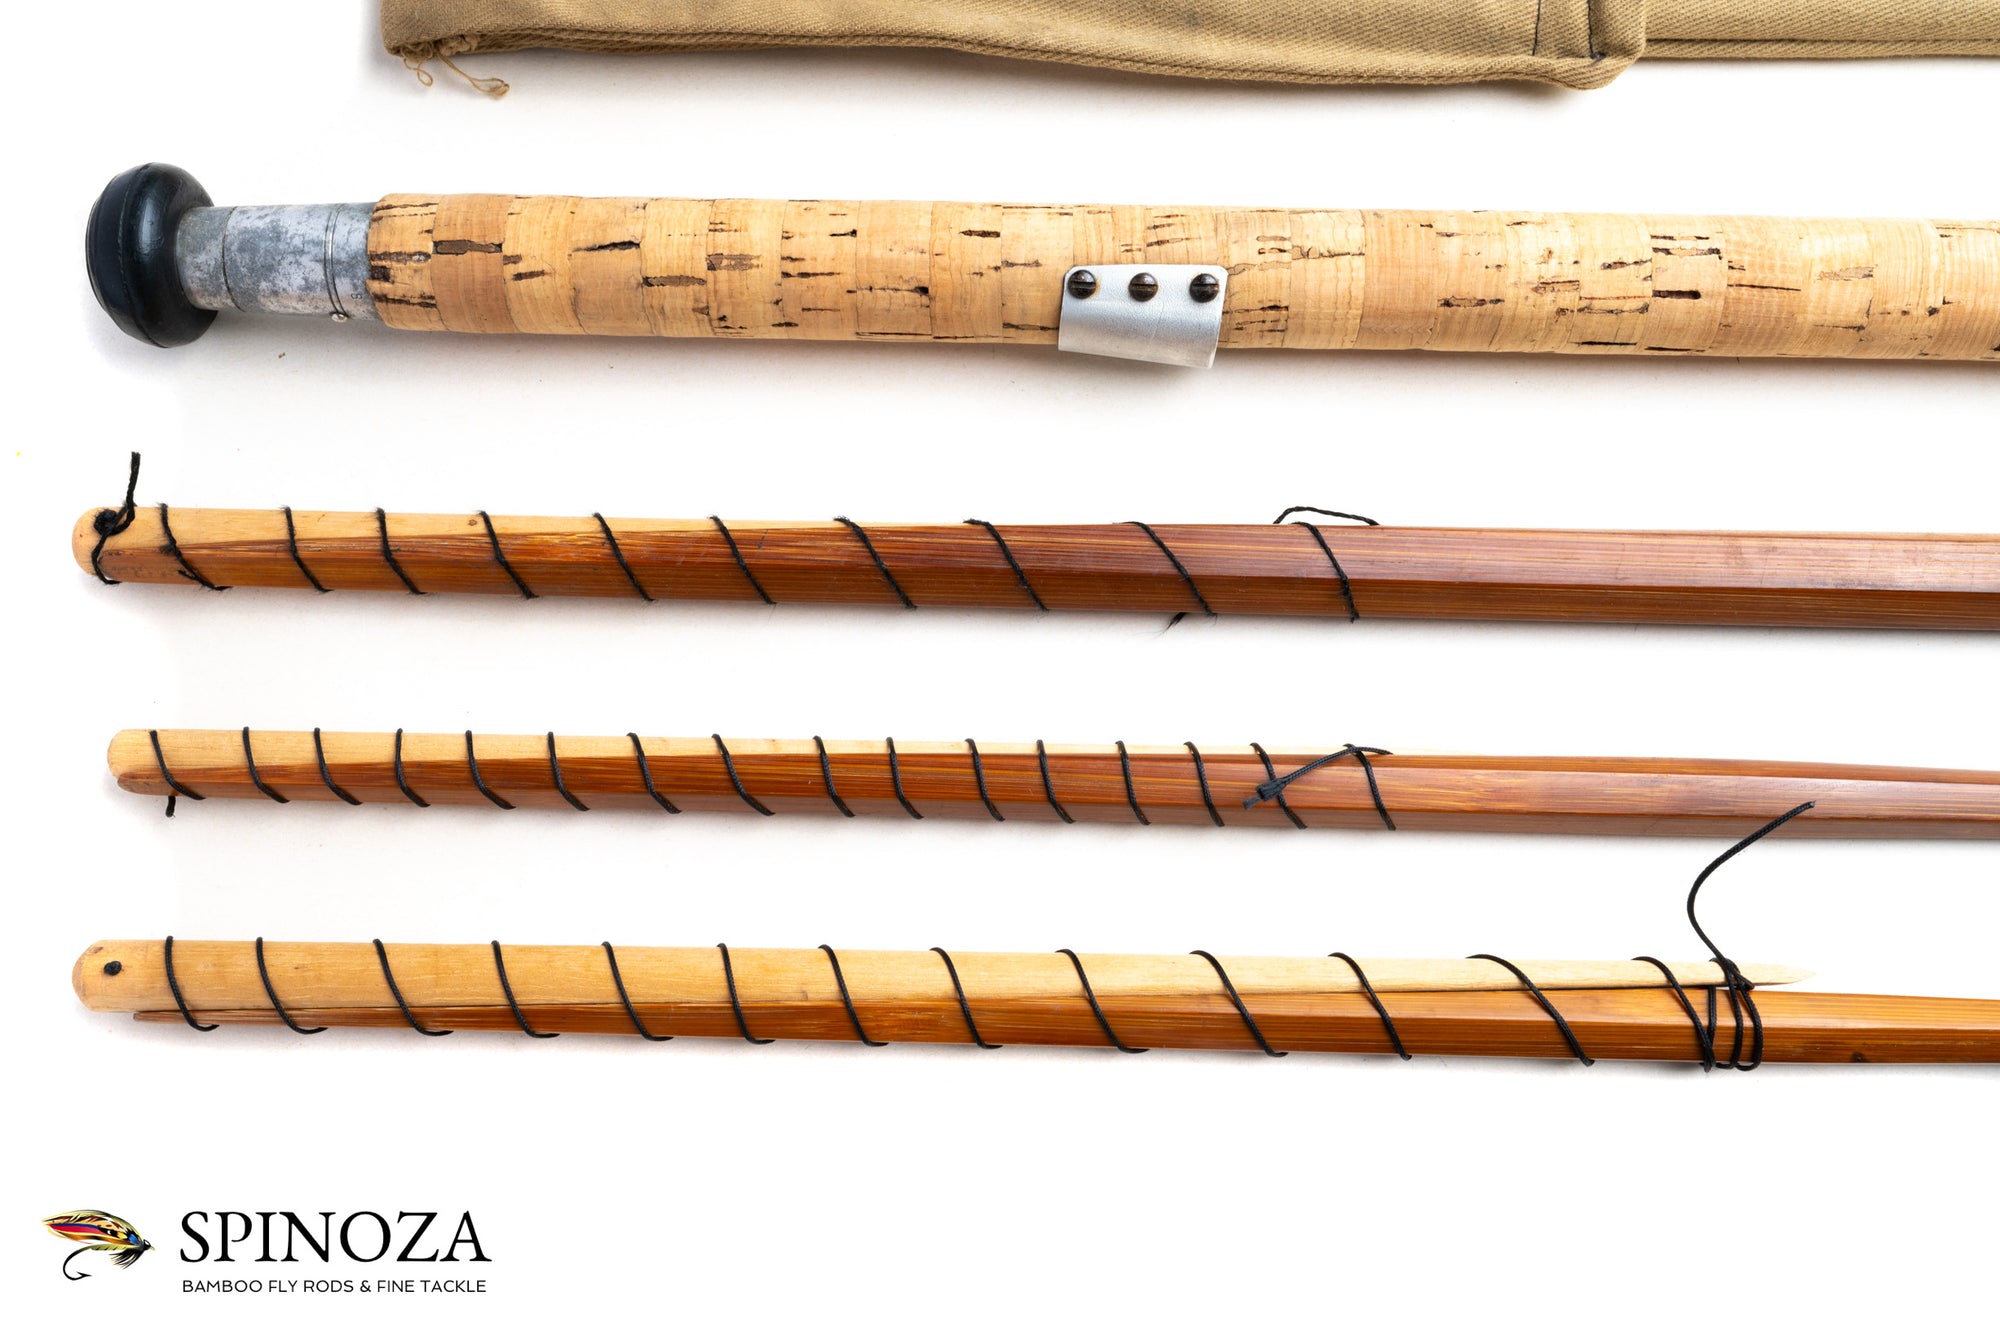 J.S. Sharpe Bamboo Fly Rods - Spinoza Rod Company